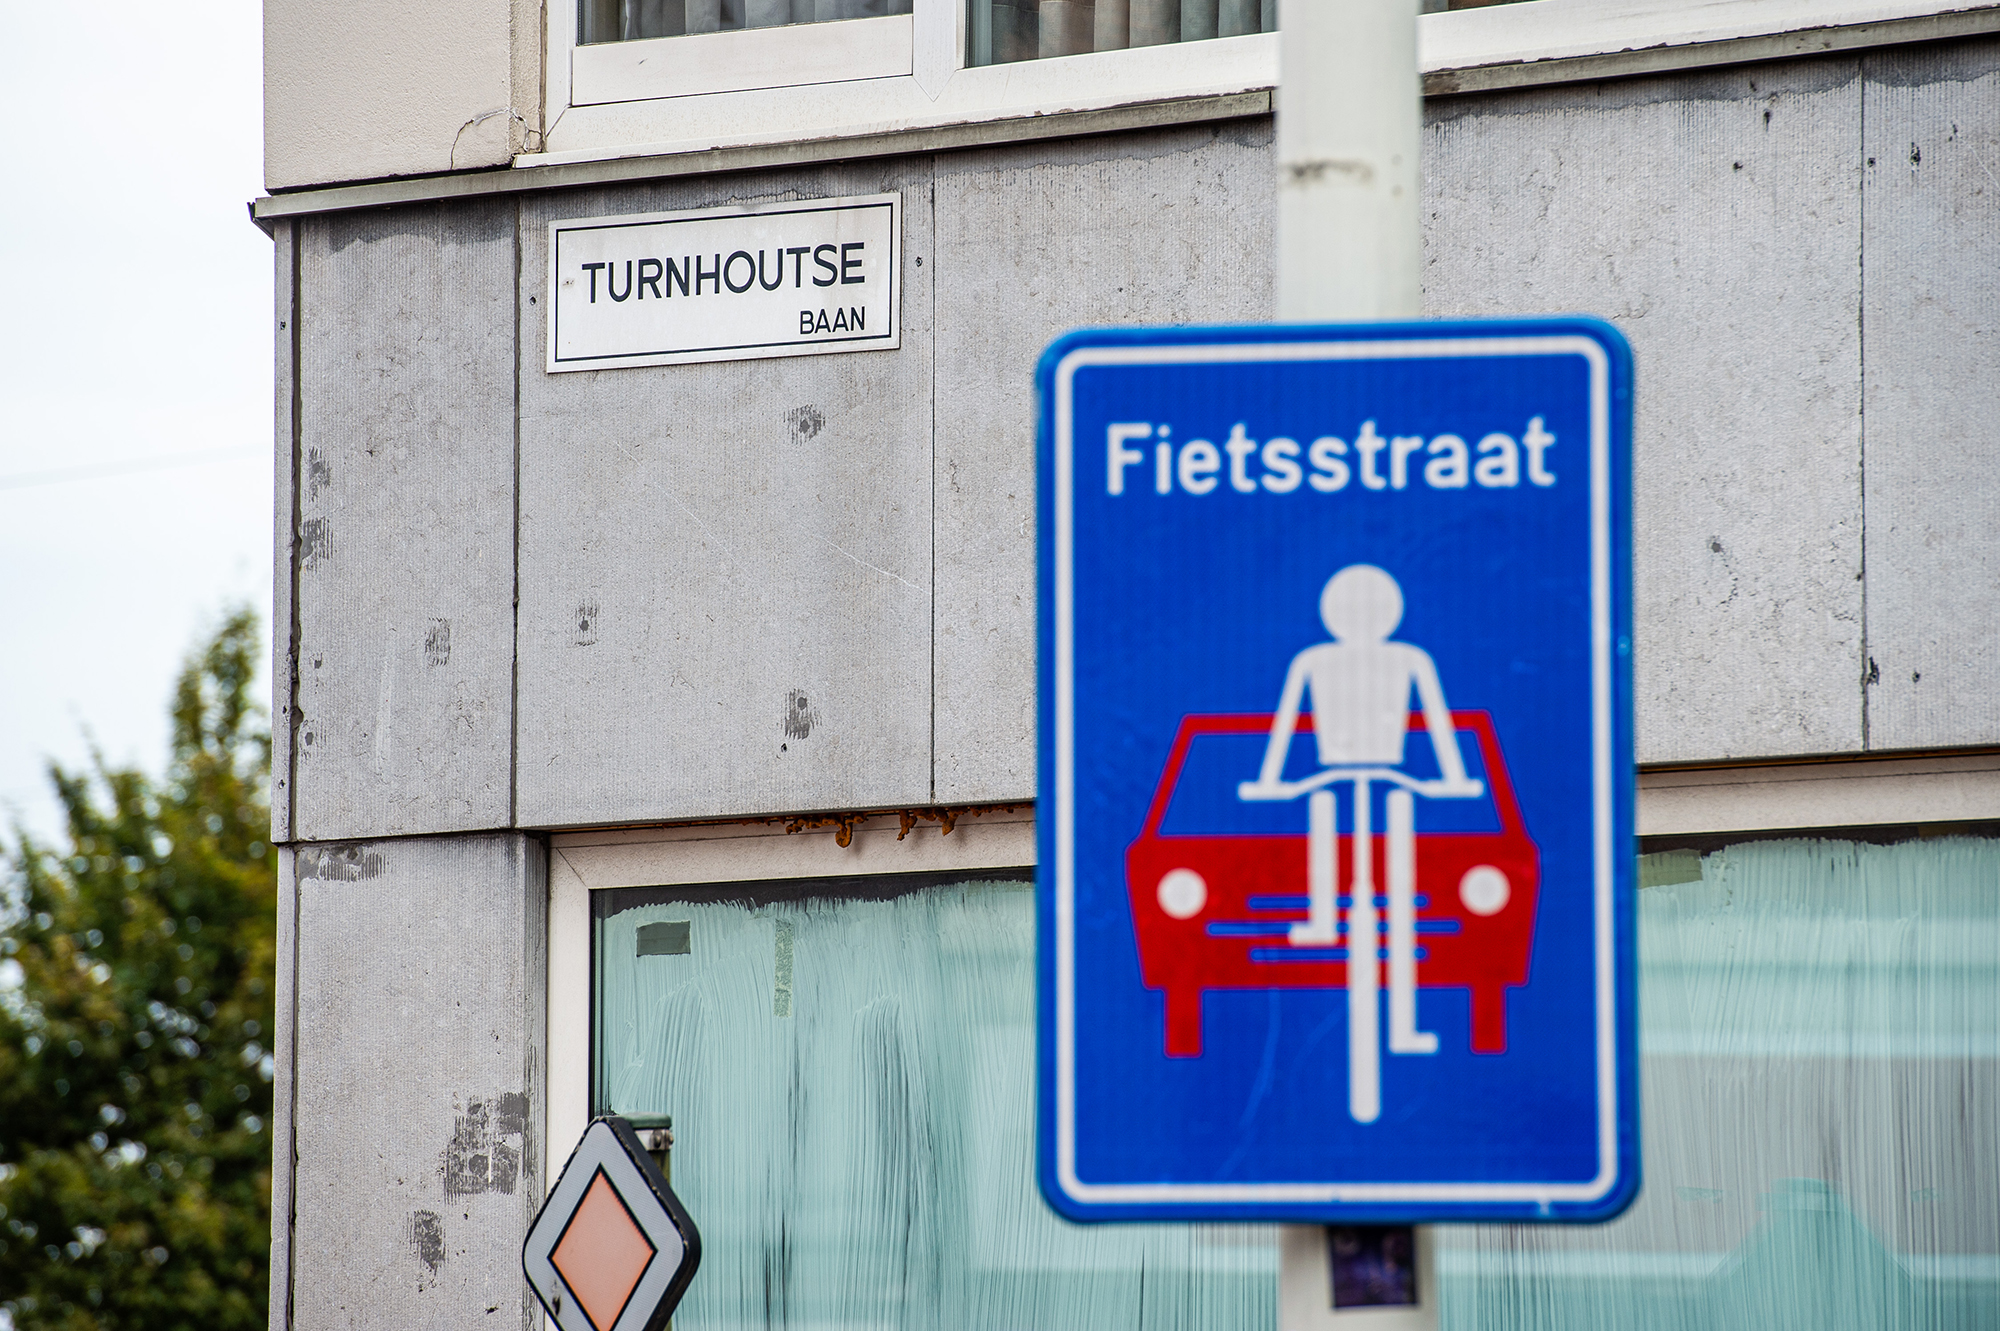 Fahrradstraße in Borgerhout, Antwerpen